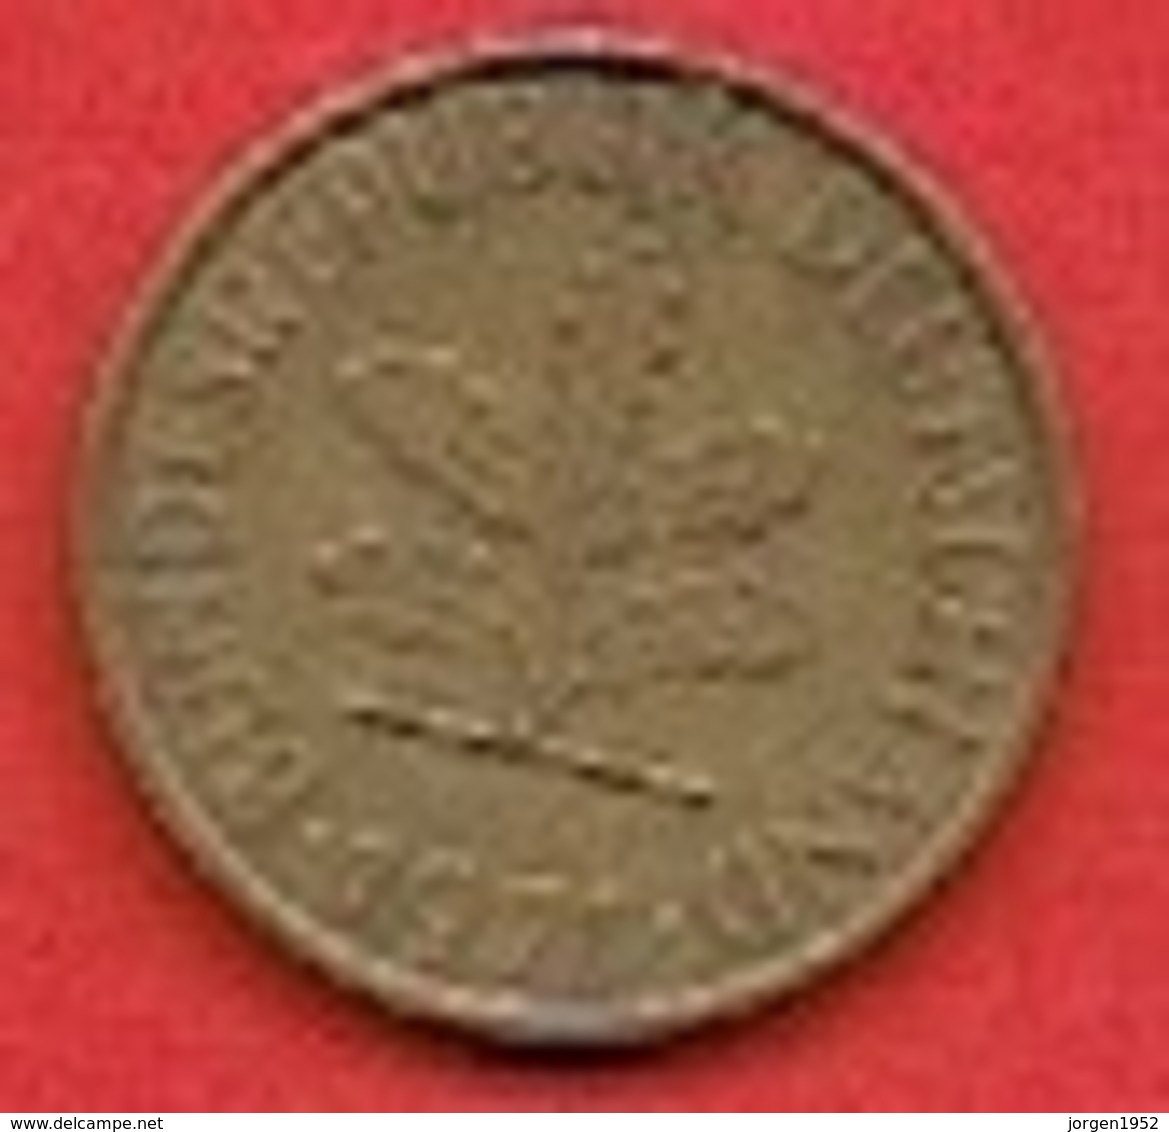 GERMANY #  5 PFENNING FROM 1971 - 5 Pfennig